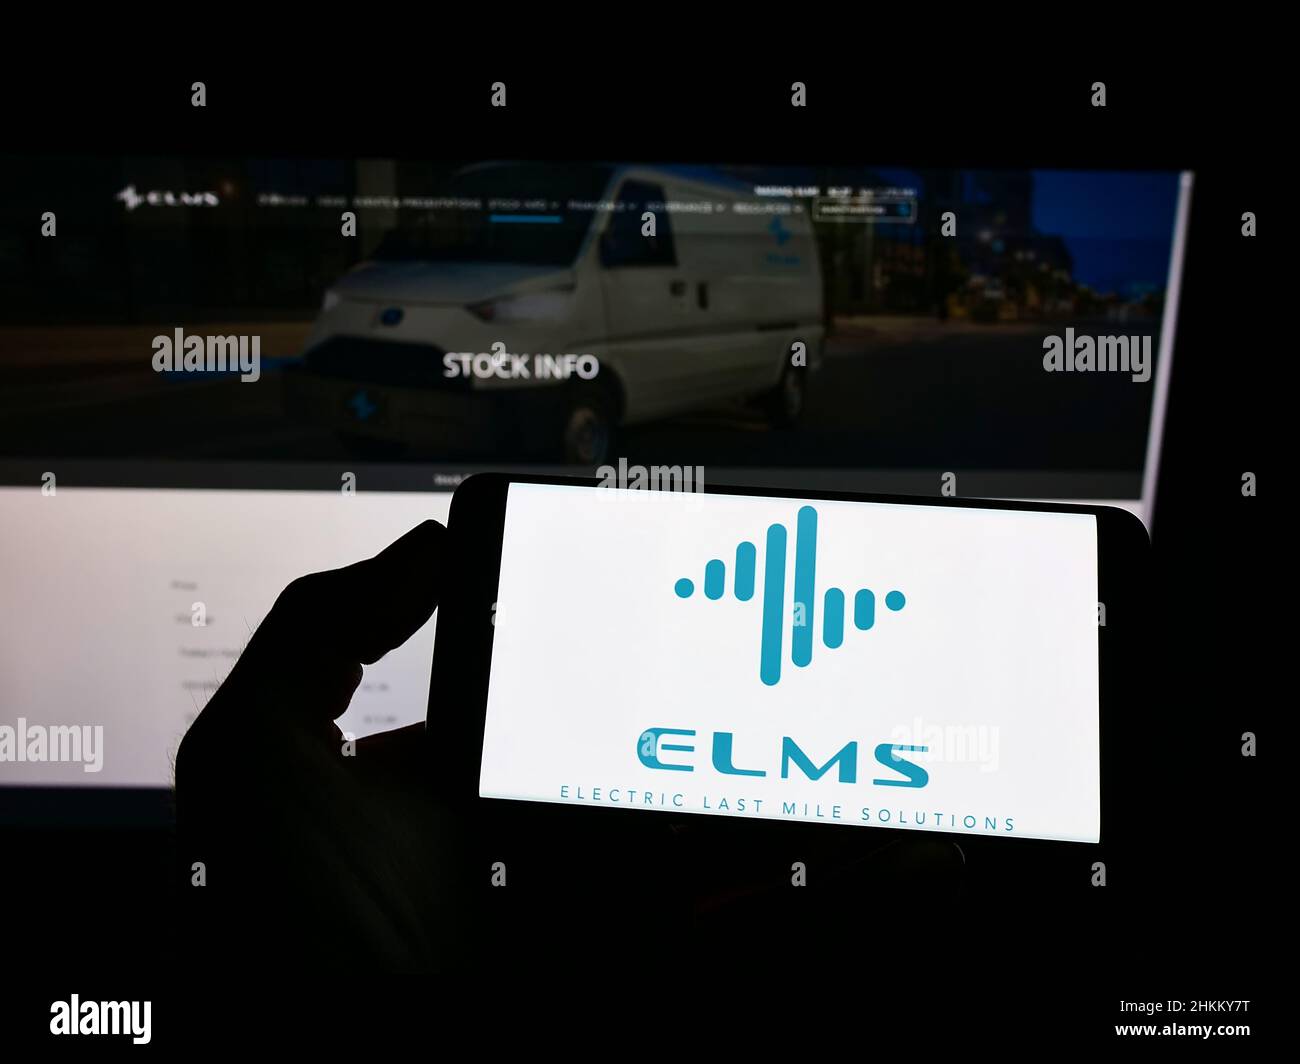 Personne tenant un téléphone portable avec le logo de la société américaine Electric Last Mile Solutions Inc. (ELMS) à l'écran en face de la page Web. Mise au point sur l'affichage du téléphone. Banque D'Images